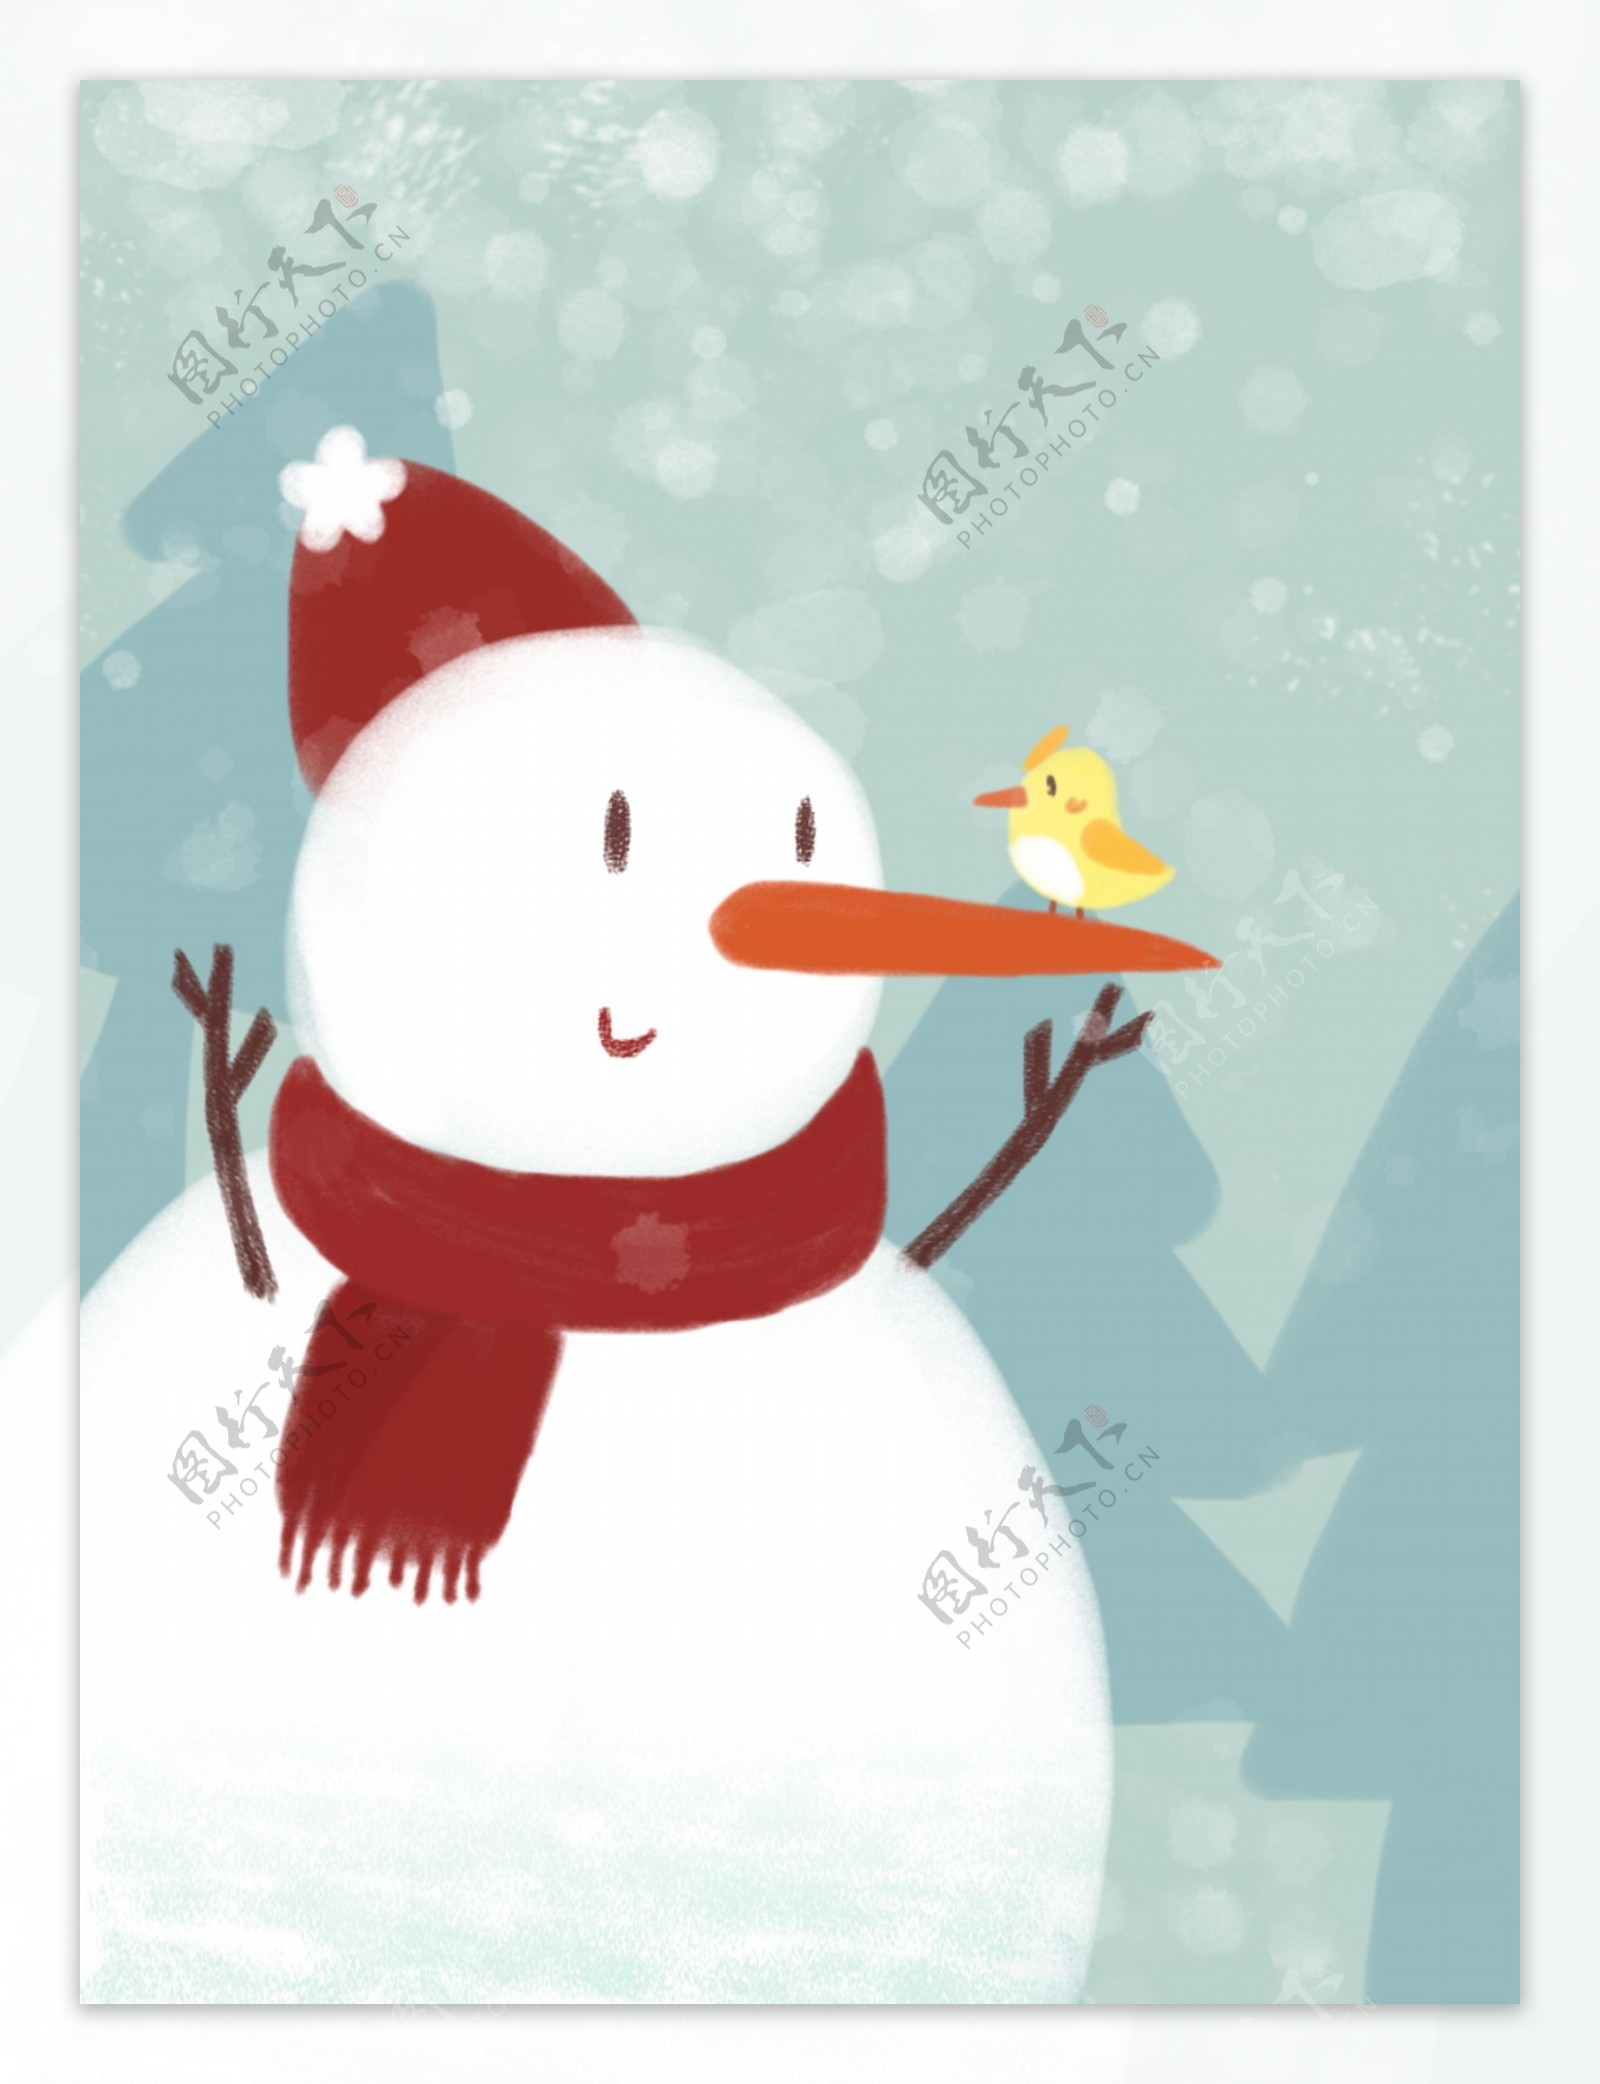 原创冬季雪仗雪人小鸟雪花围巾卡通插画背景